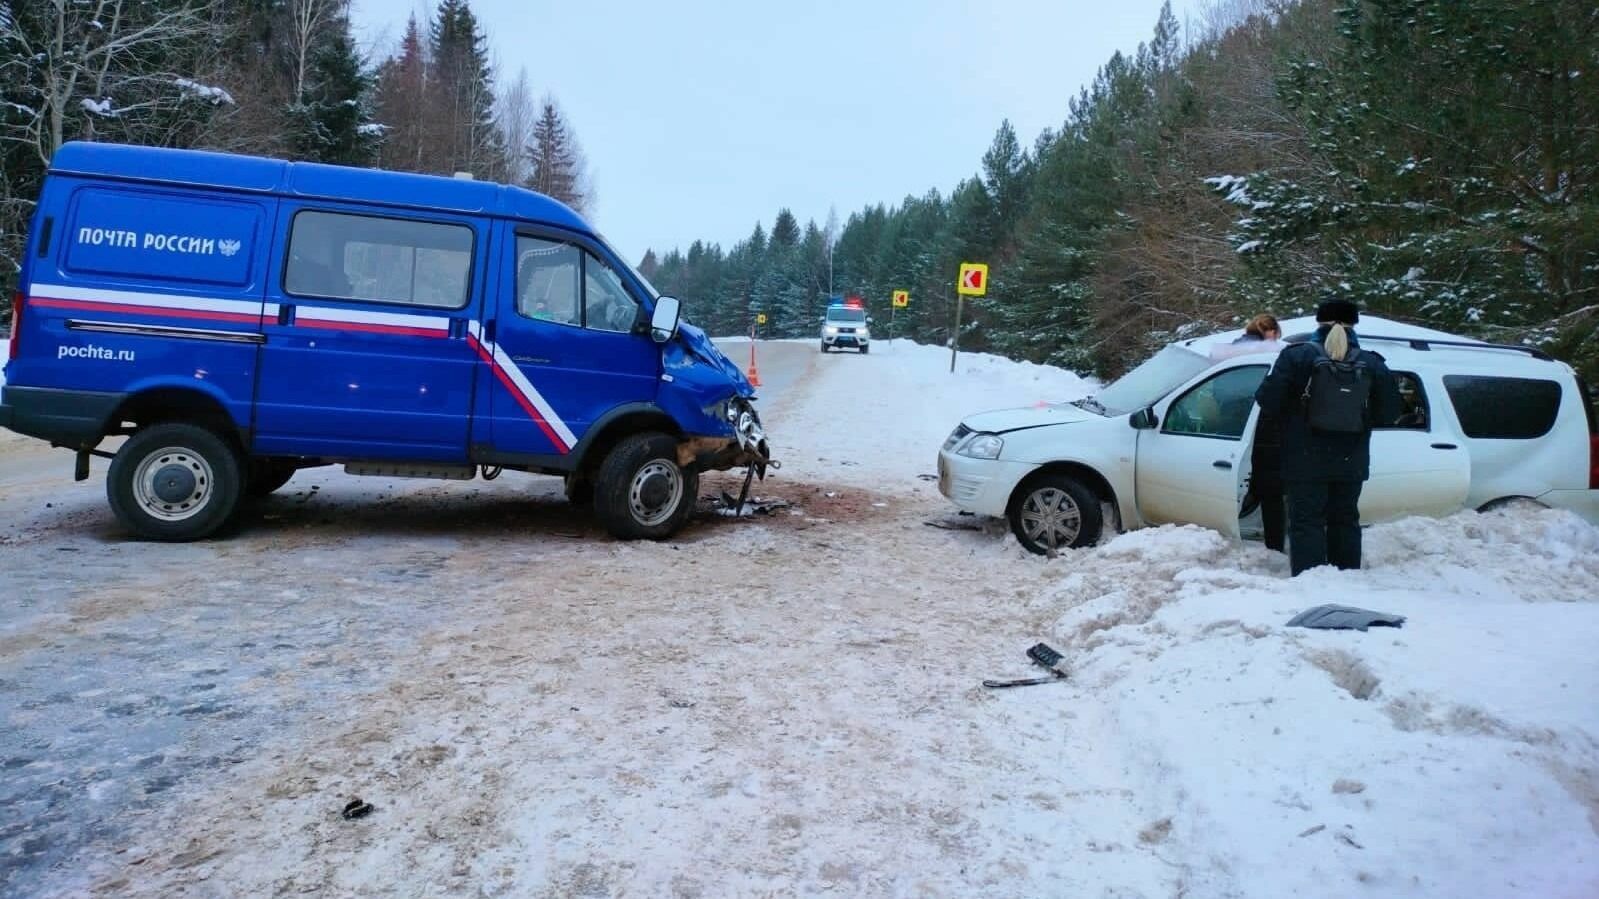 Микроавтобус «Почты России» попал в автокатастрофу. Один человек погиб, двое ранены